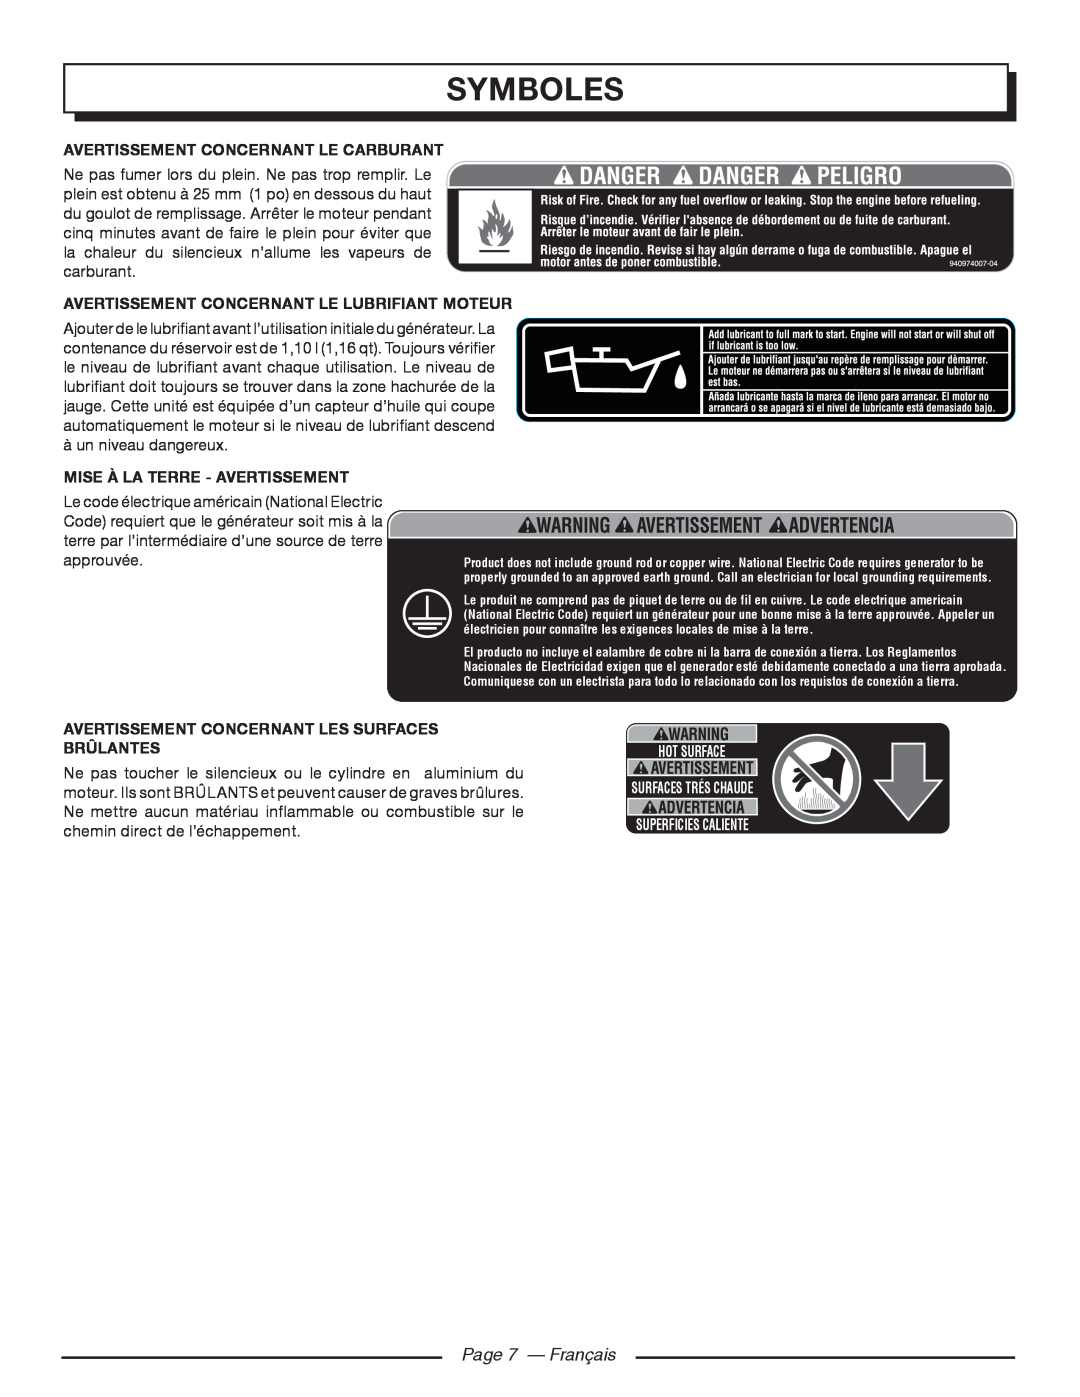 Homelite HGCA5000 Page 7 - Français, Symboles, Avertissement Concernant Le Carburant, Mise À La Terre - Avertissement 